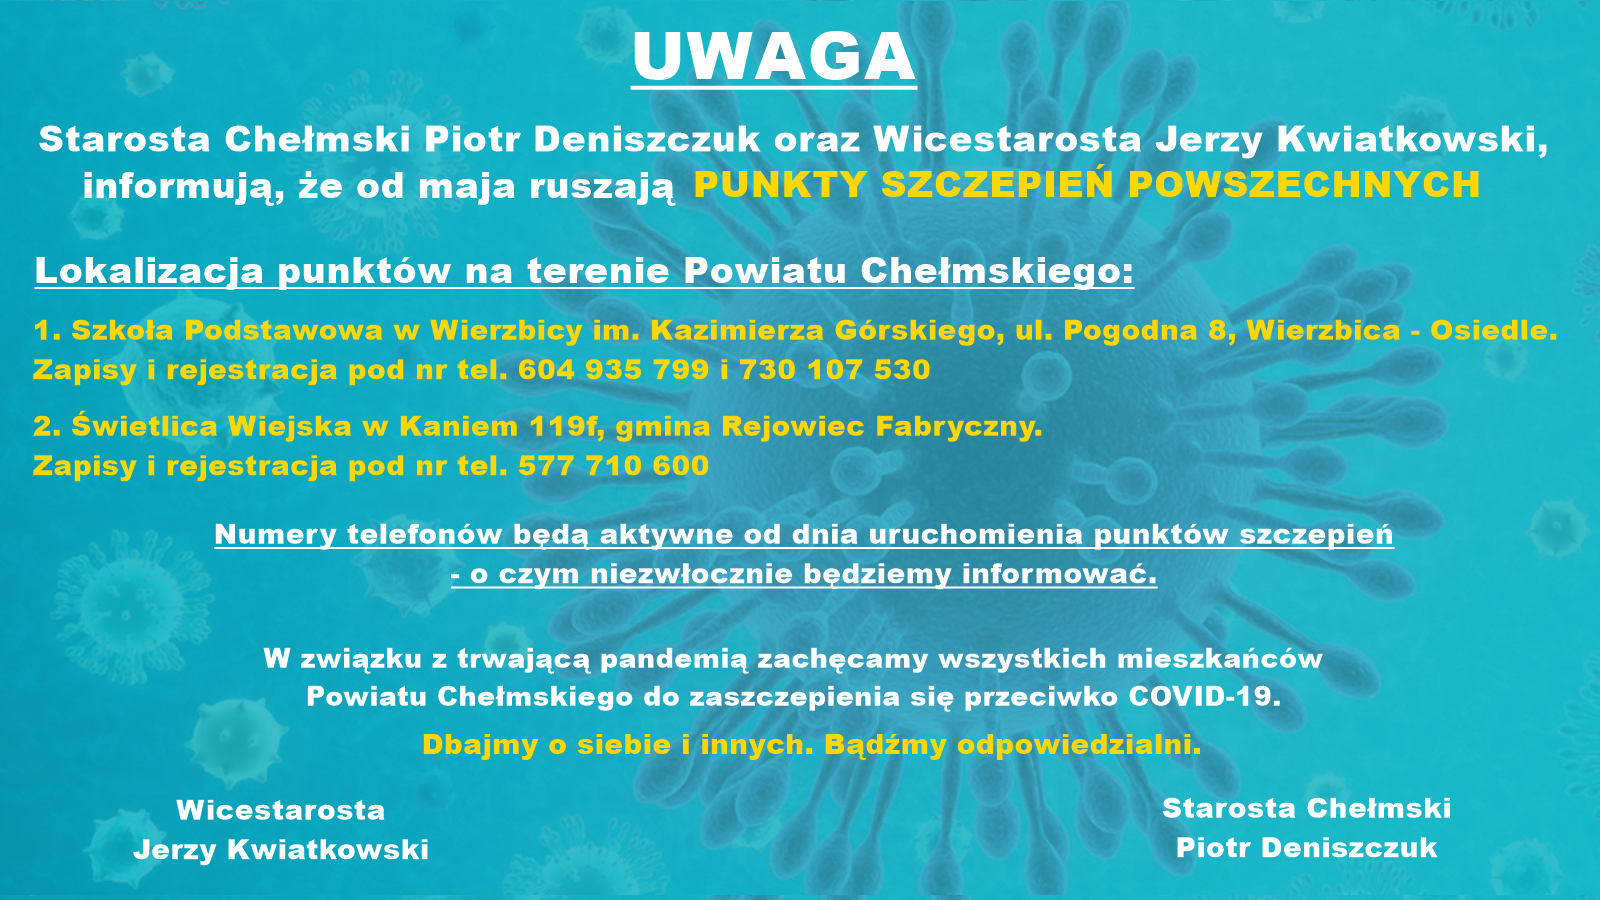 plakat z informacjami o Punktach Szczepień Powszechnych i tło niebieskie ze zdjęciem koronawirusa